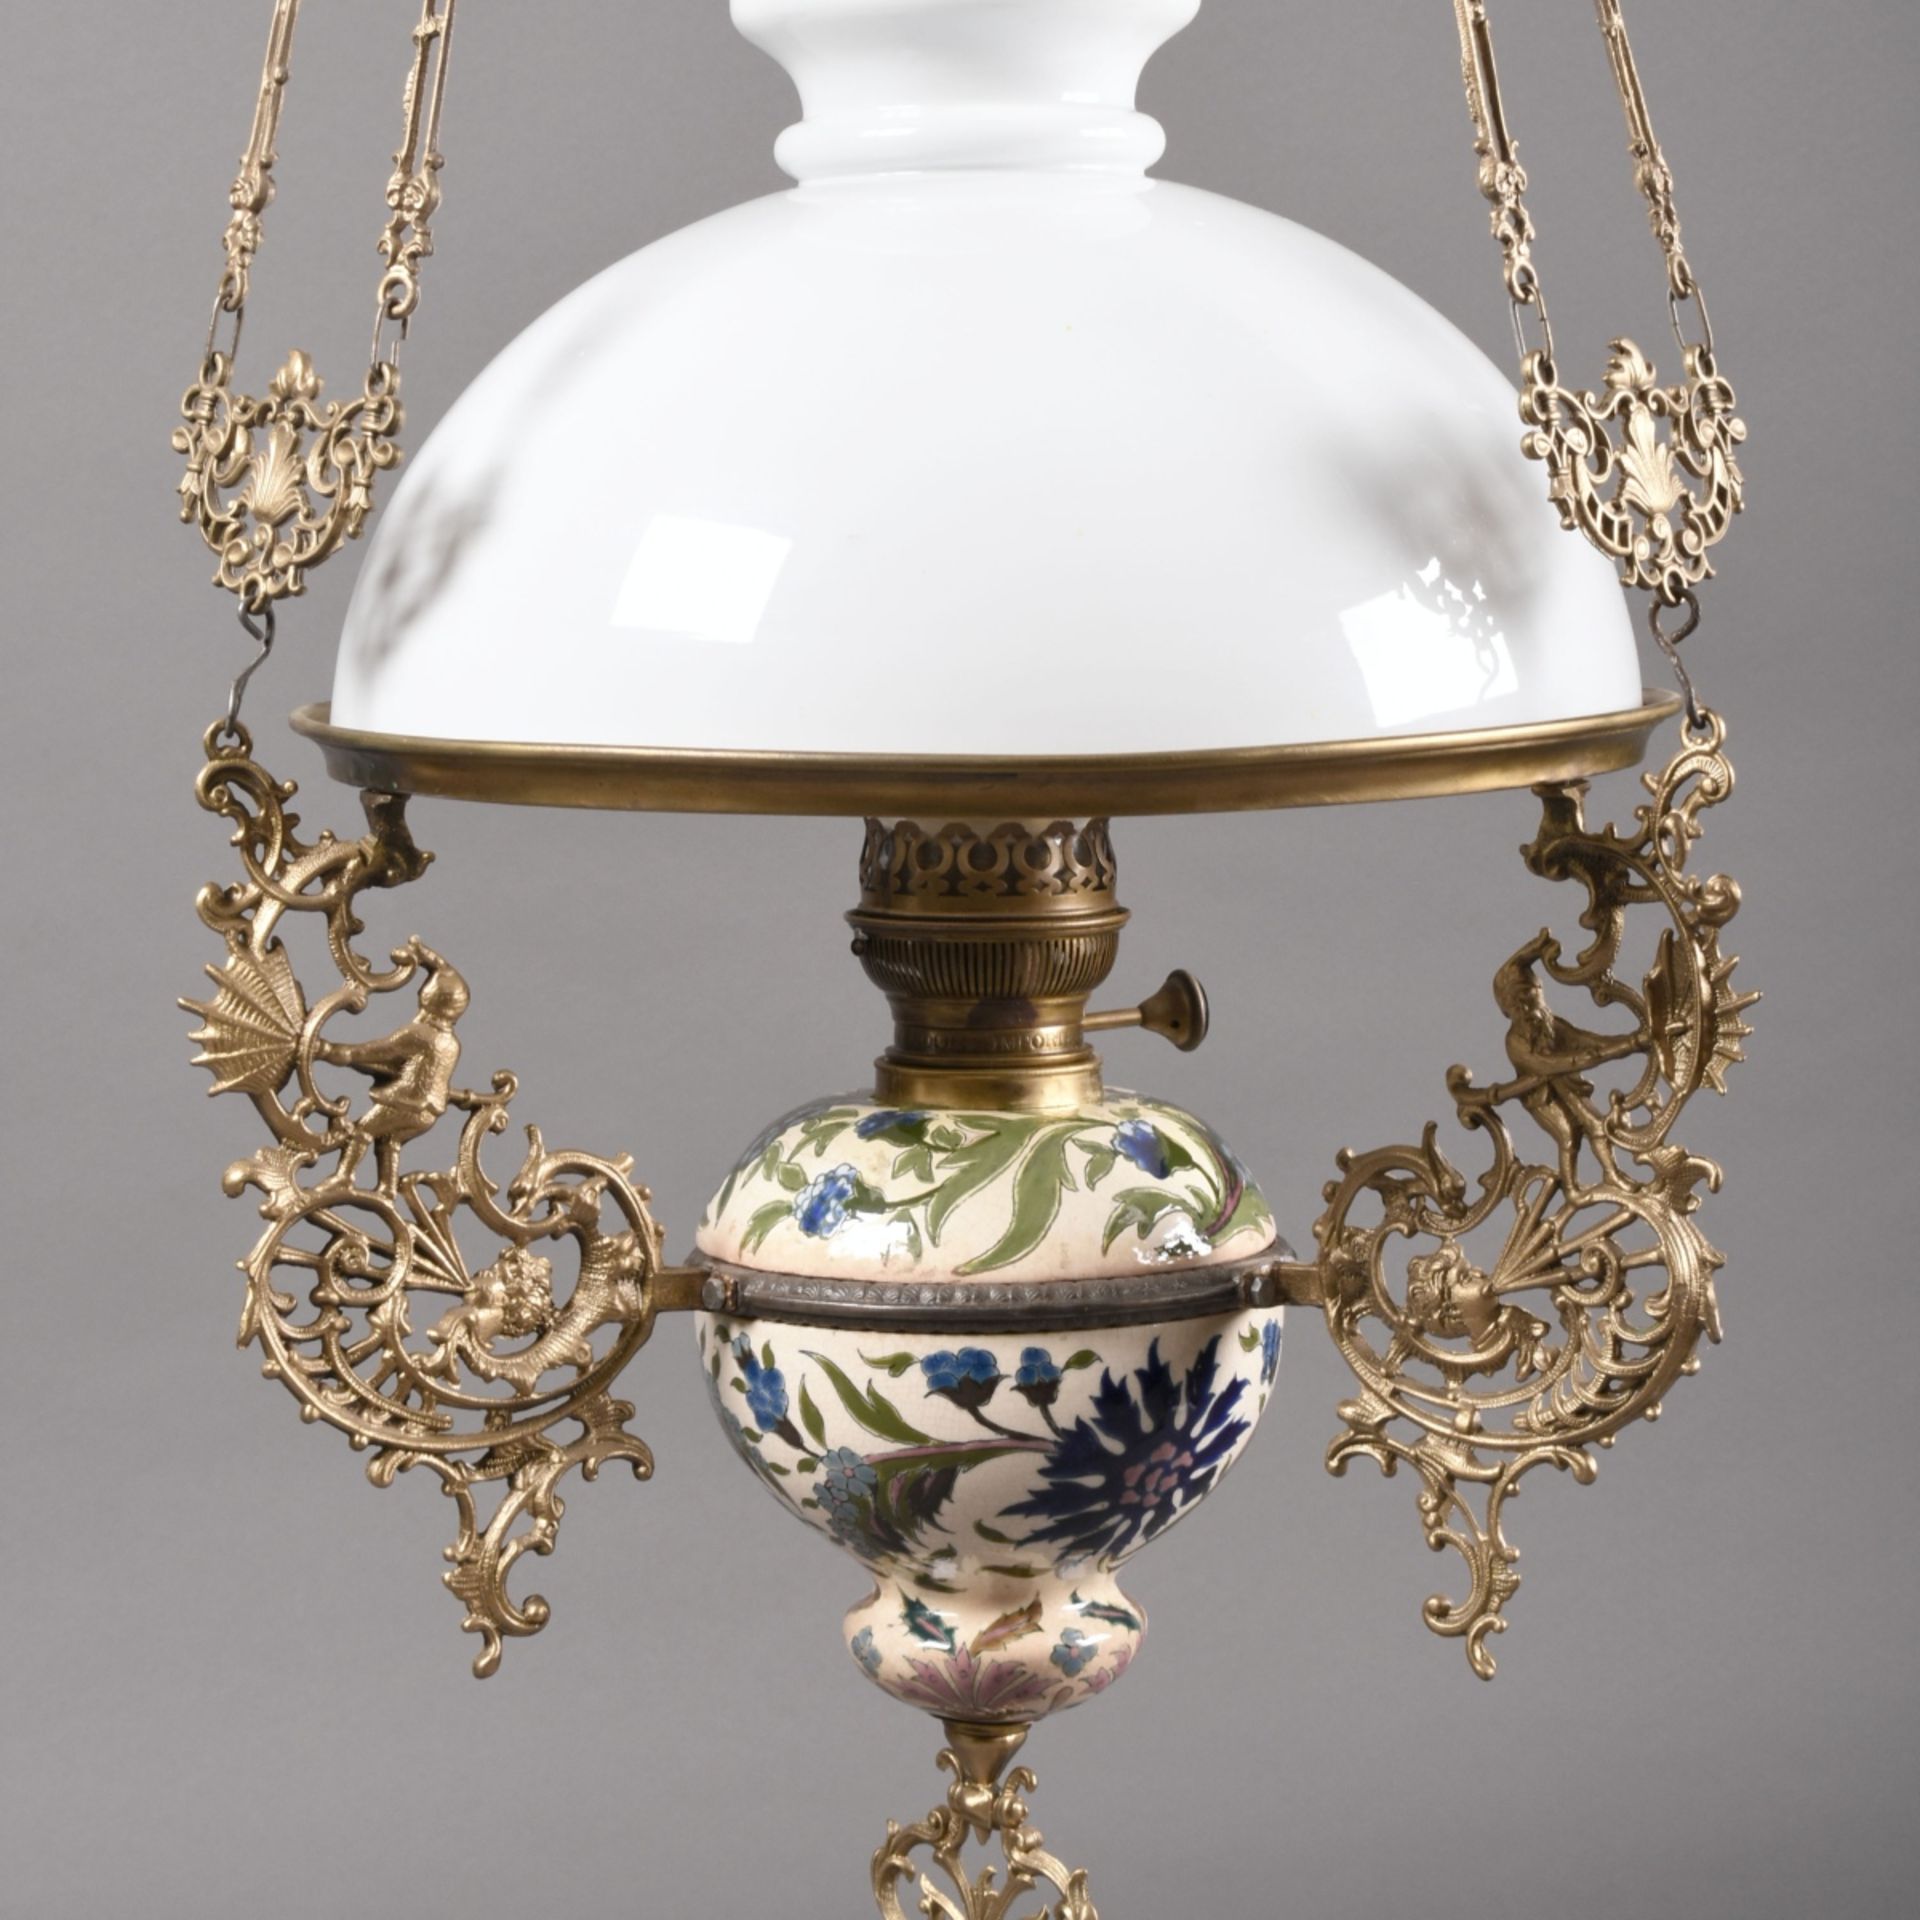 Salon-Deckenpetroleumlampe von Petroleumbehälter mit floralem Dekor in farbiger Glasur 3 abgehende